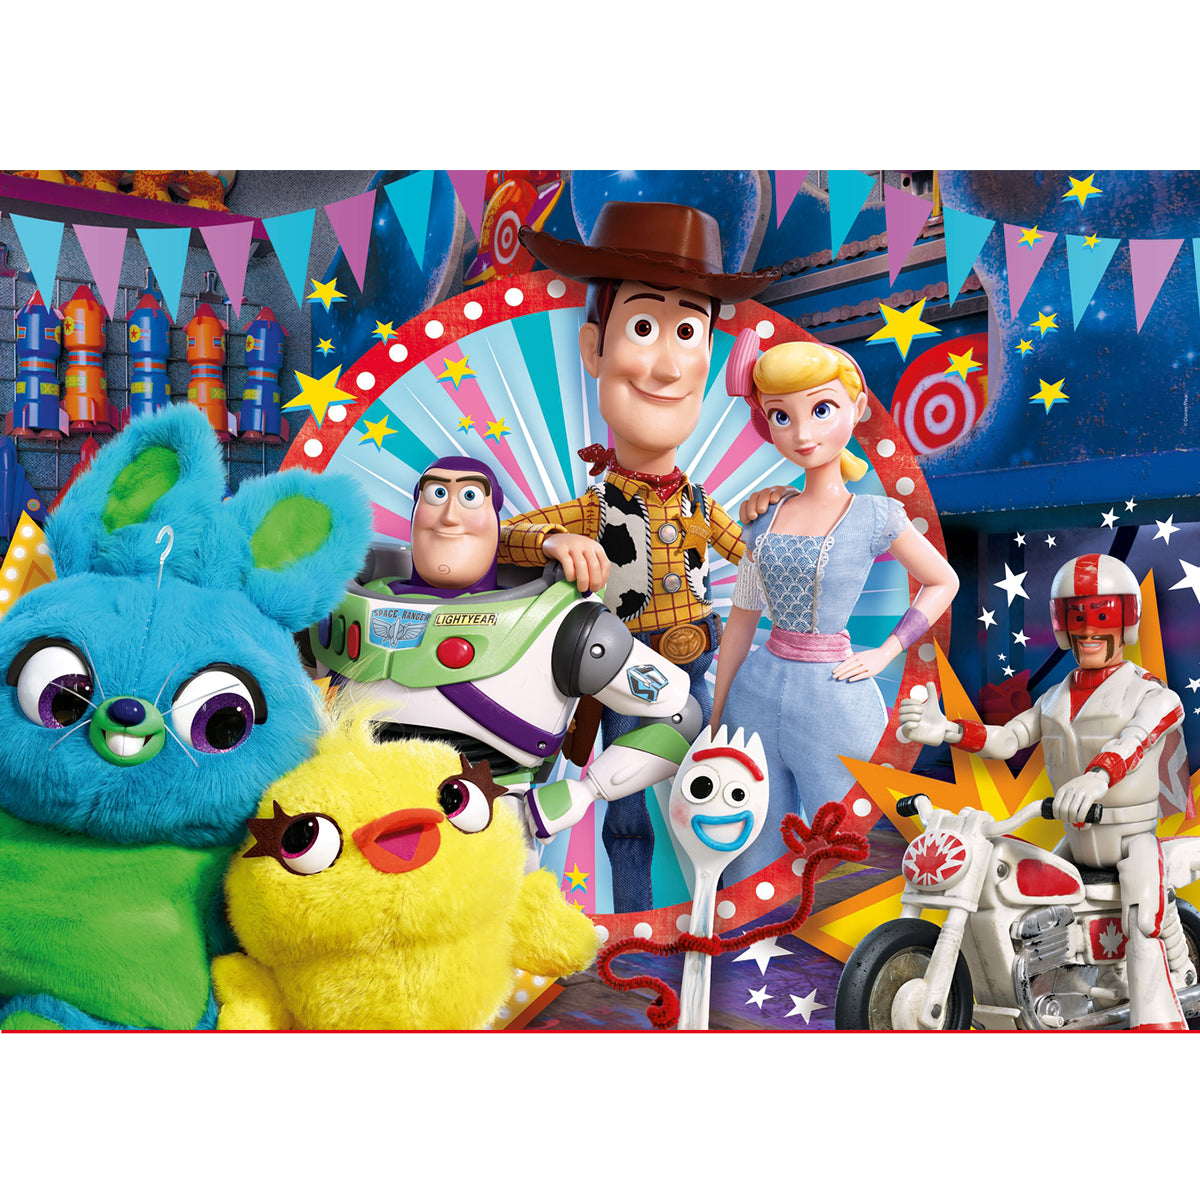 Clementoni - Disney Toy Story 4 - 104 pcs - Supercolor Puzzle